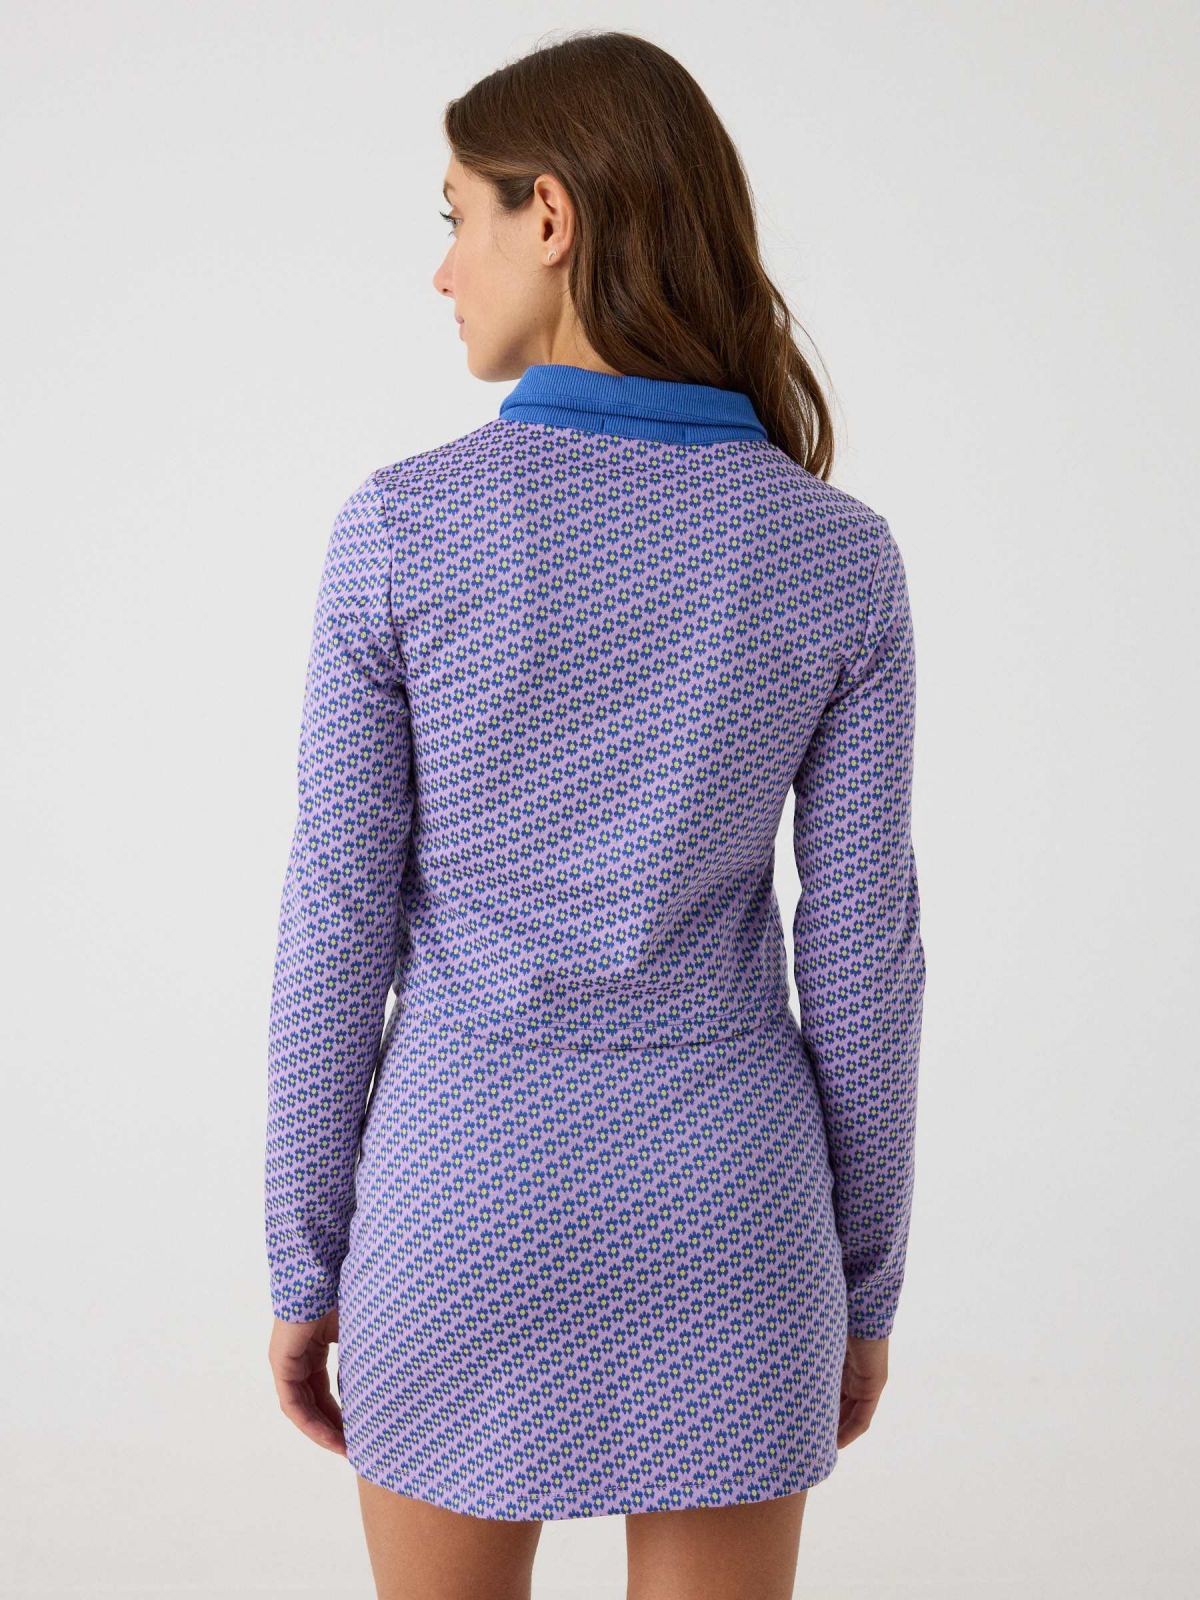 Mini jacquard skirt purple middle back view